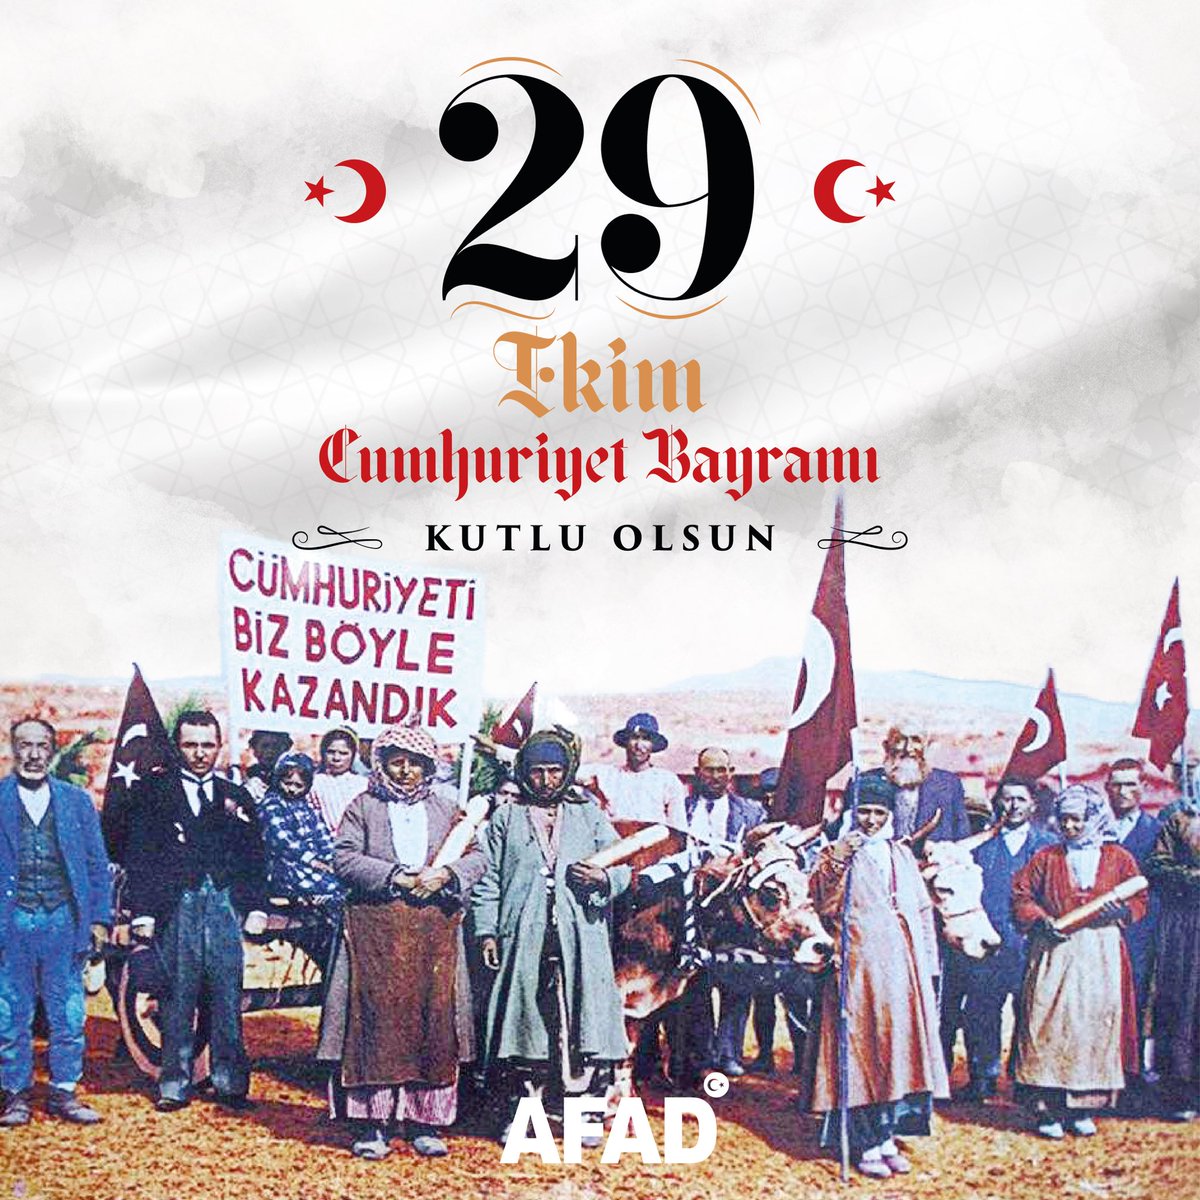 Cumhuriyetimiz 9⃣9⃣ yaşında! Gazi Mustafa Kemal Atatürk ve silah arkadaşları başta olmak üzere tüm milli mücadele kahramanlarımızı saygı ve minnetle anıyoruz. #CumhuriyetBayramı kutlu olsun 🇹🇷